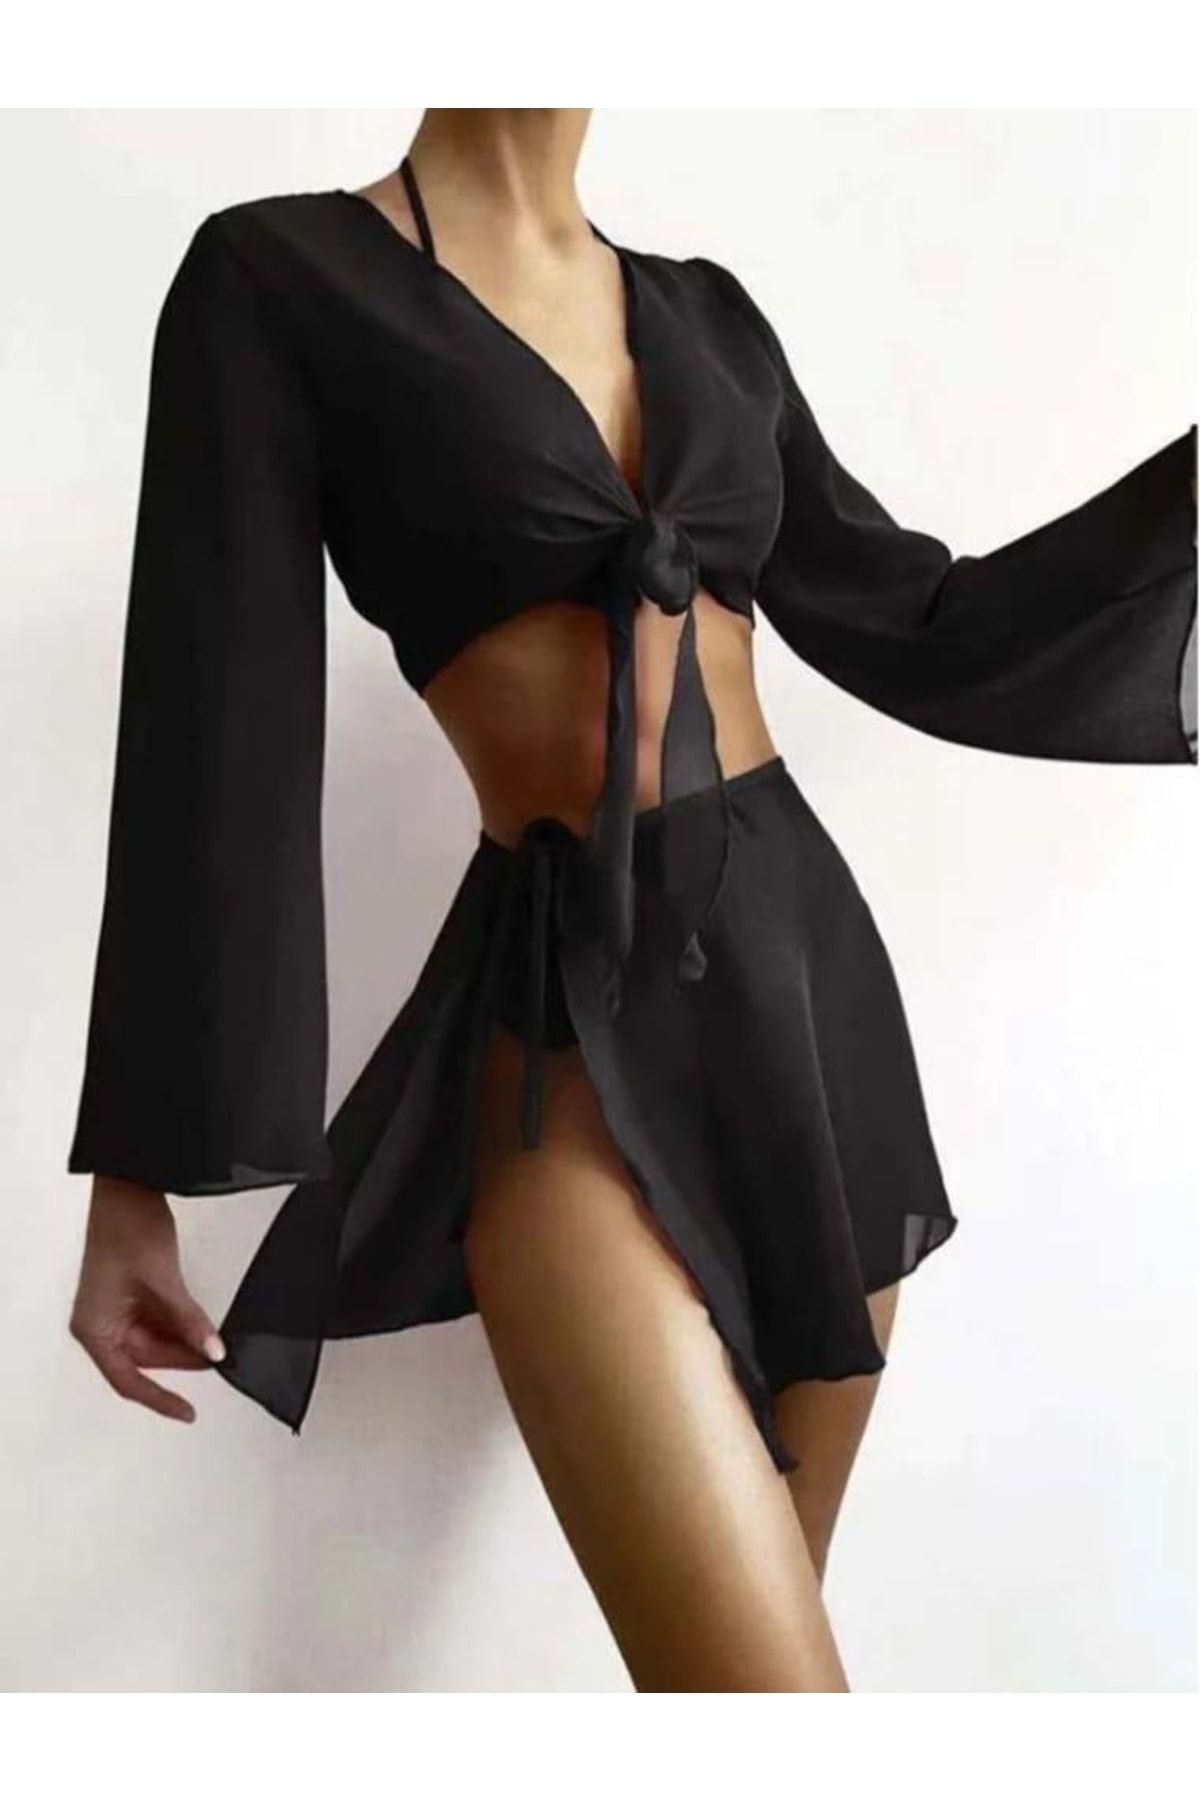 LOİS LANE Kadın Siyah Göğüs Bel Bağlamalı Tül Bluz Etek Görünümlü Alt Üst Deniz Plaj Elbisesi Pareo Takımı